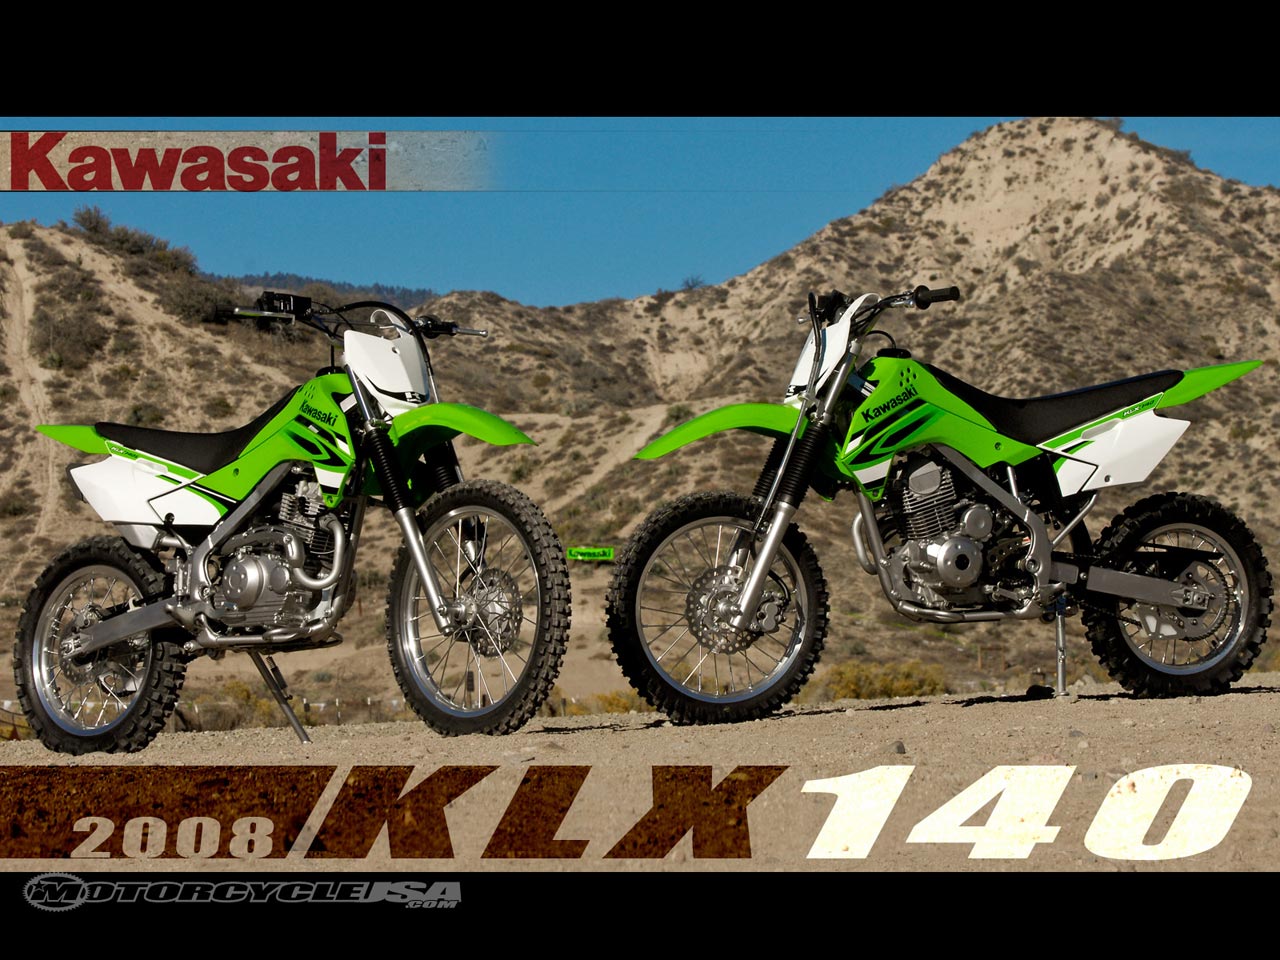 Modèle : Kawasaki klx140l